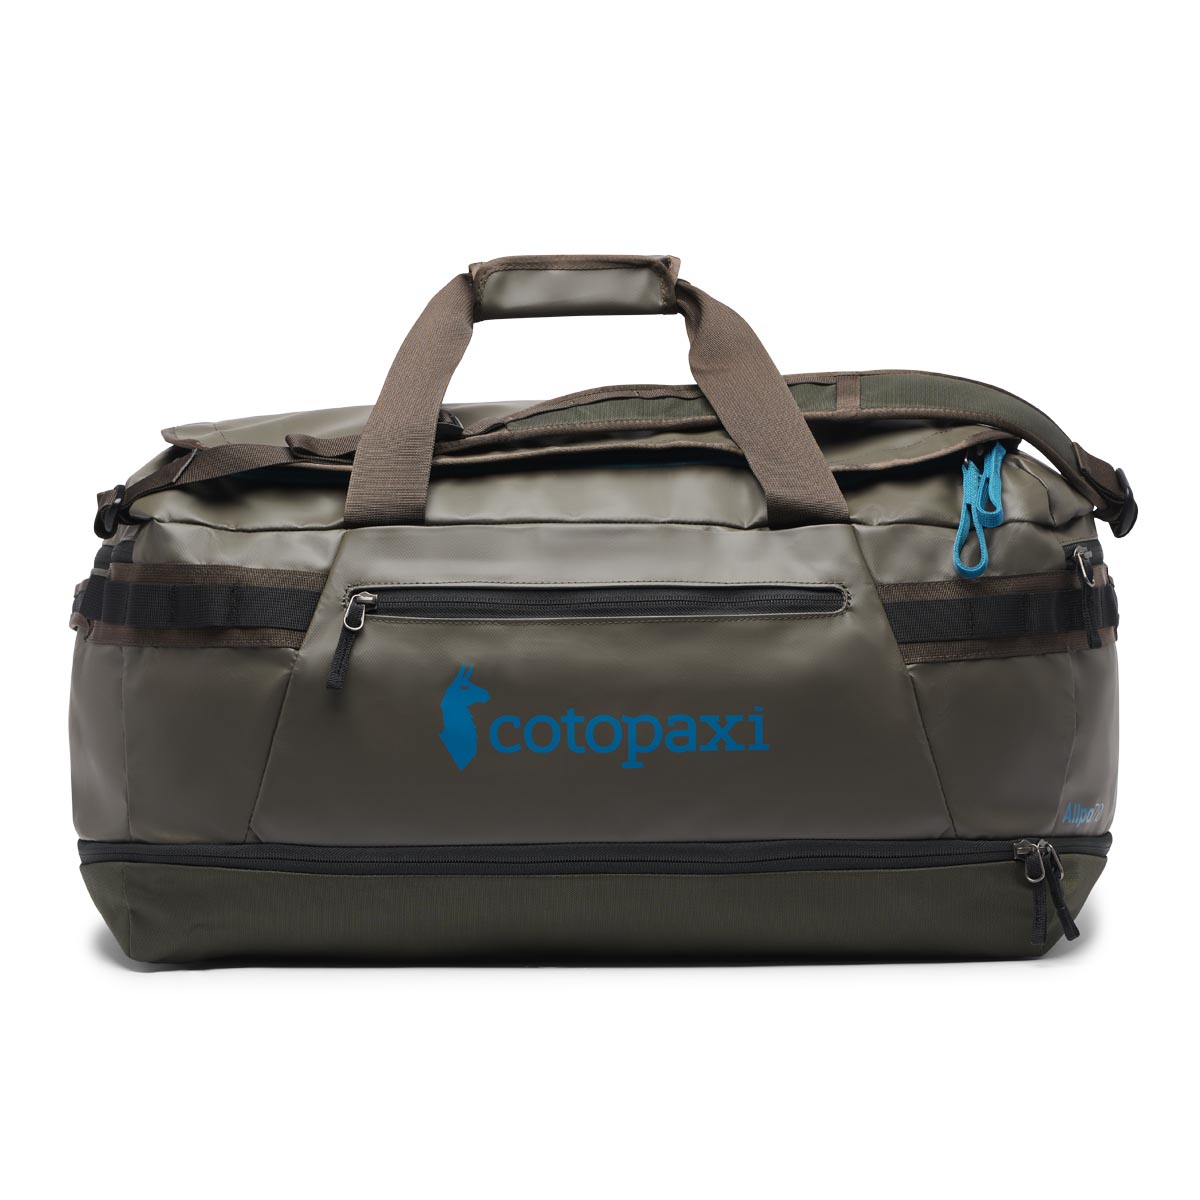 Cotopaxi Allpa Duo 70L Duffle Bag